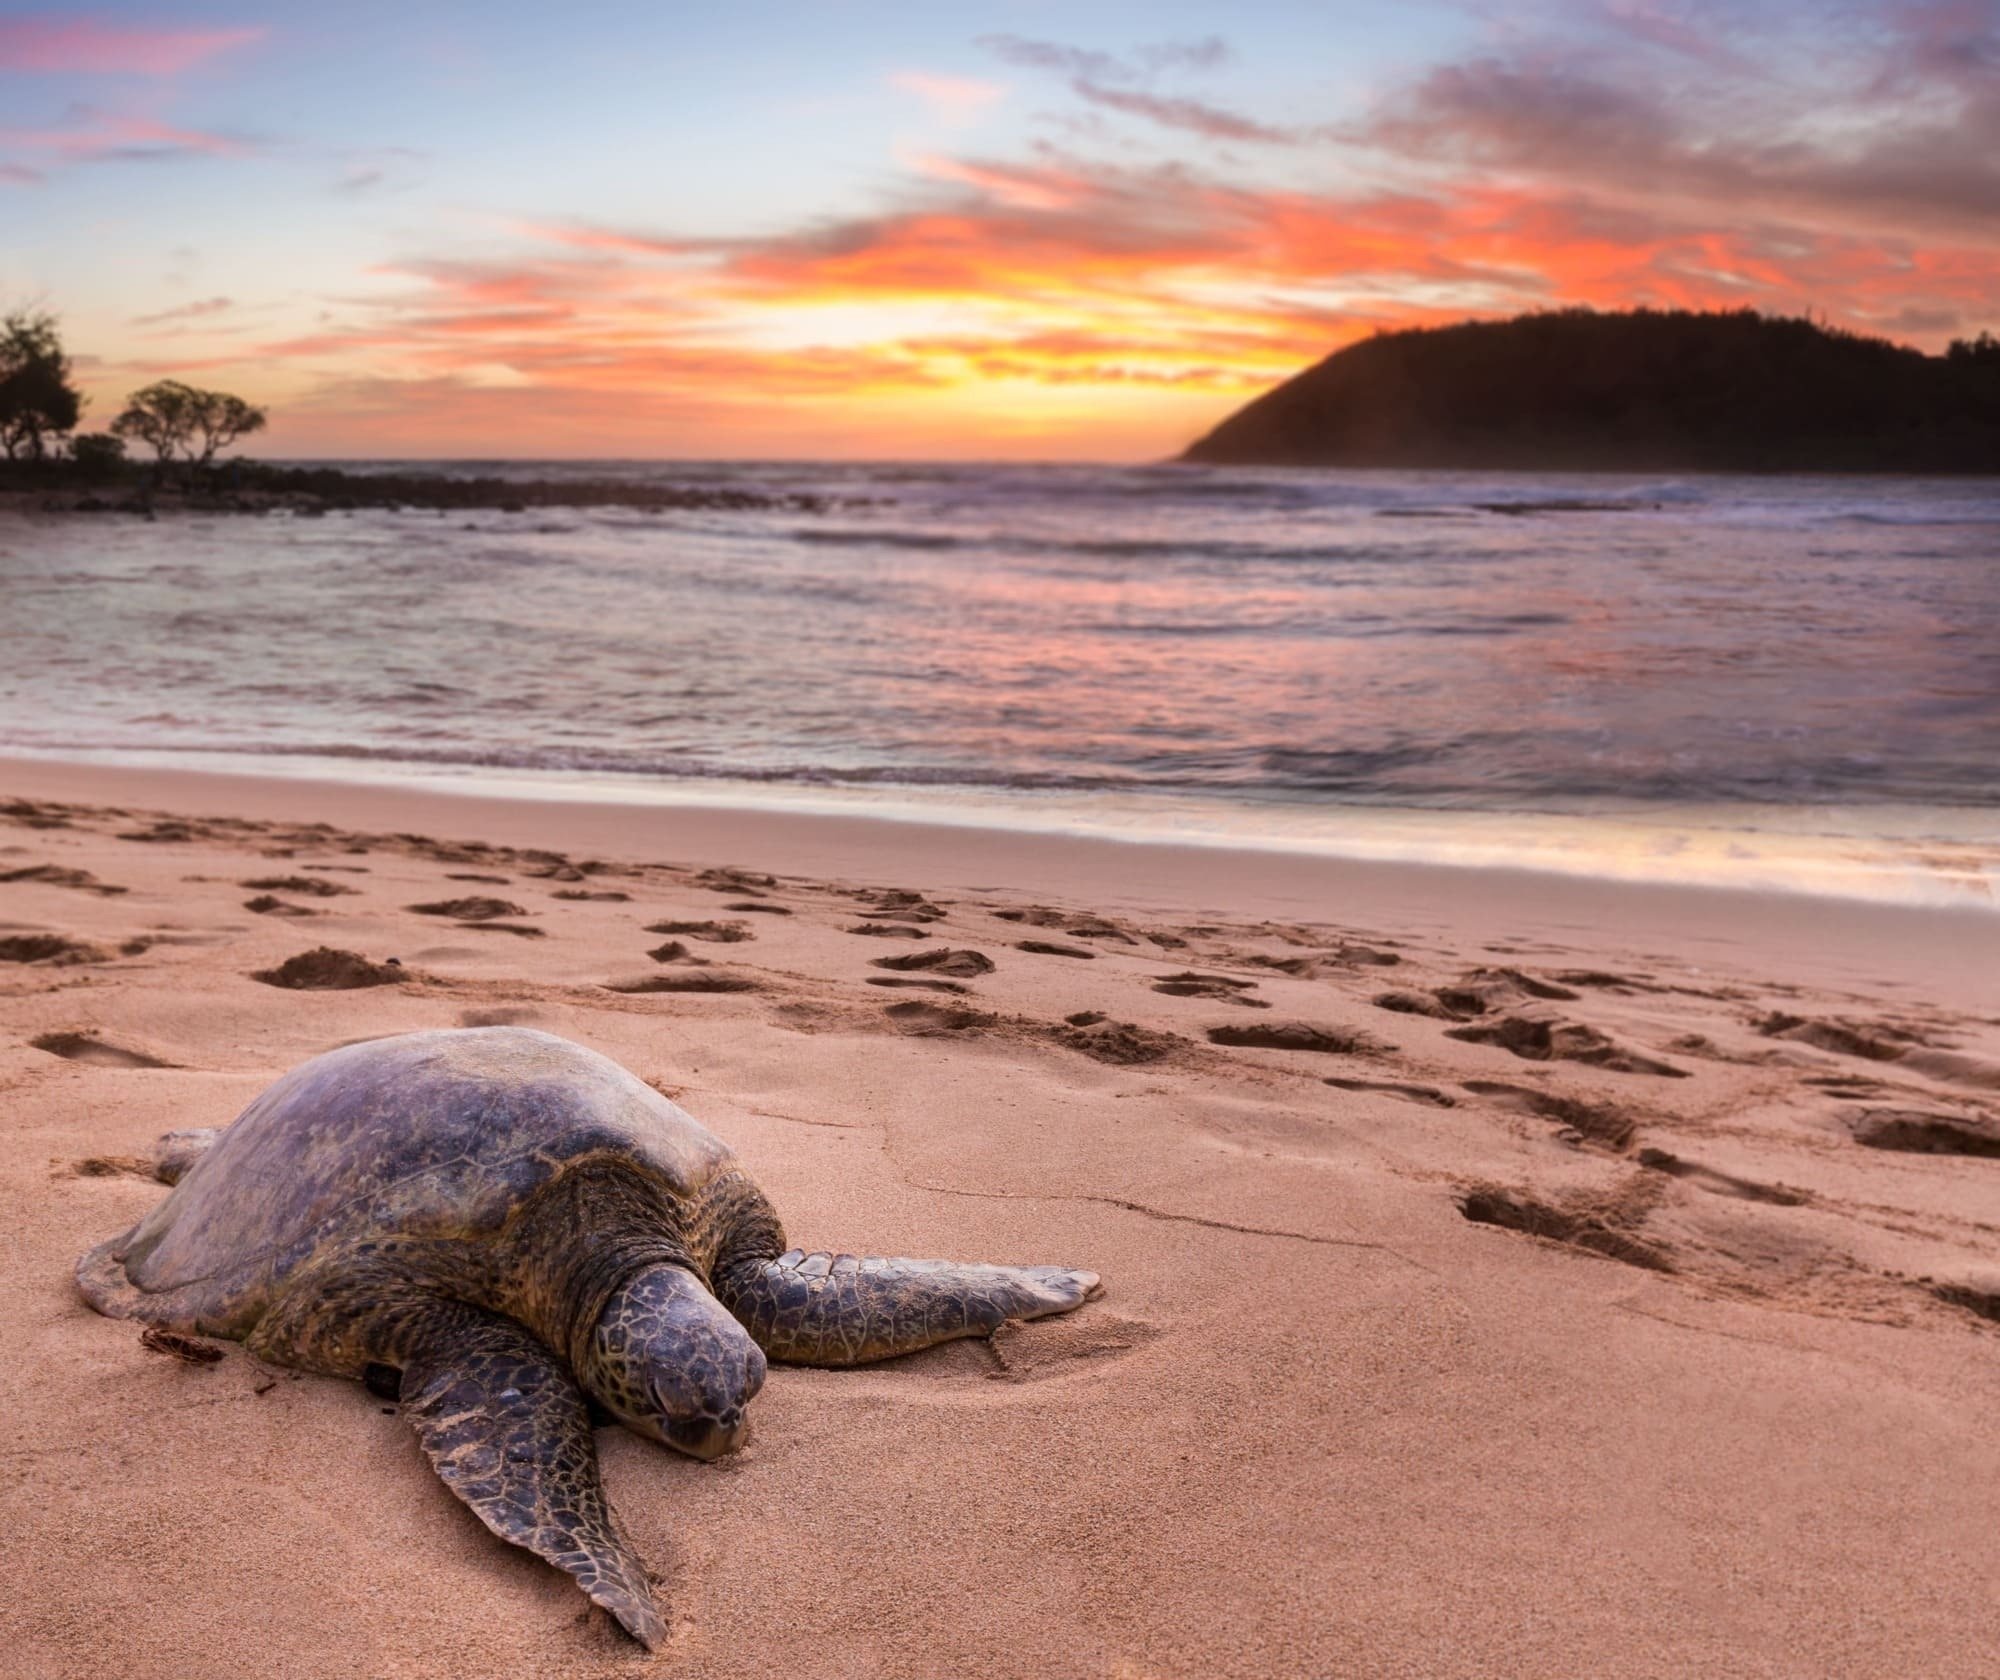 uma tartaruga está deitada na praia ao pôr do sol